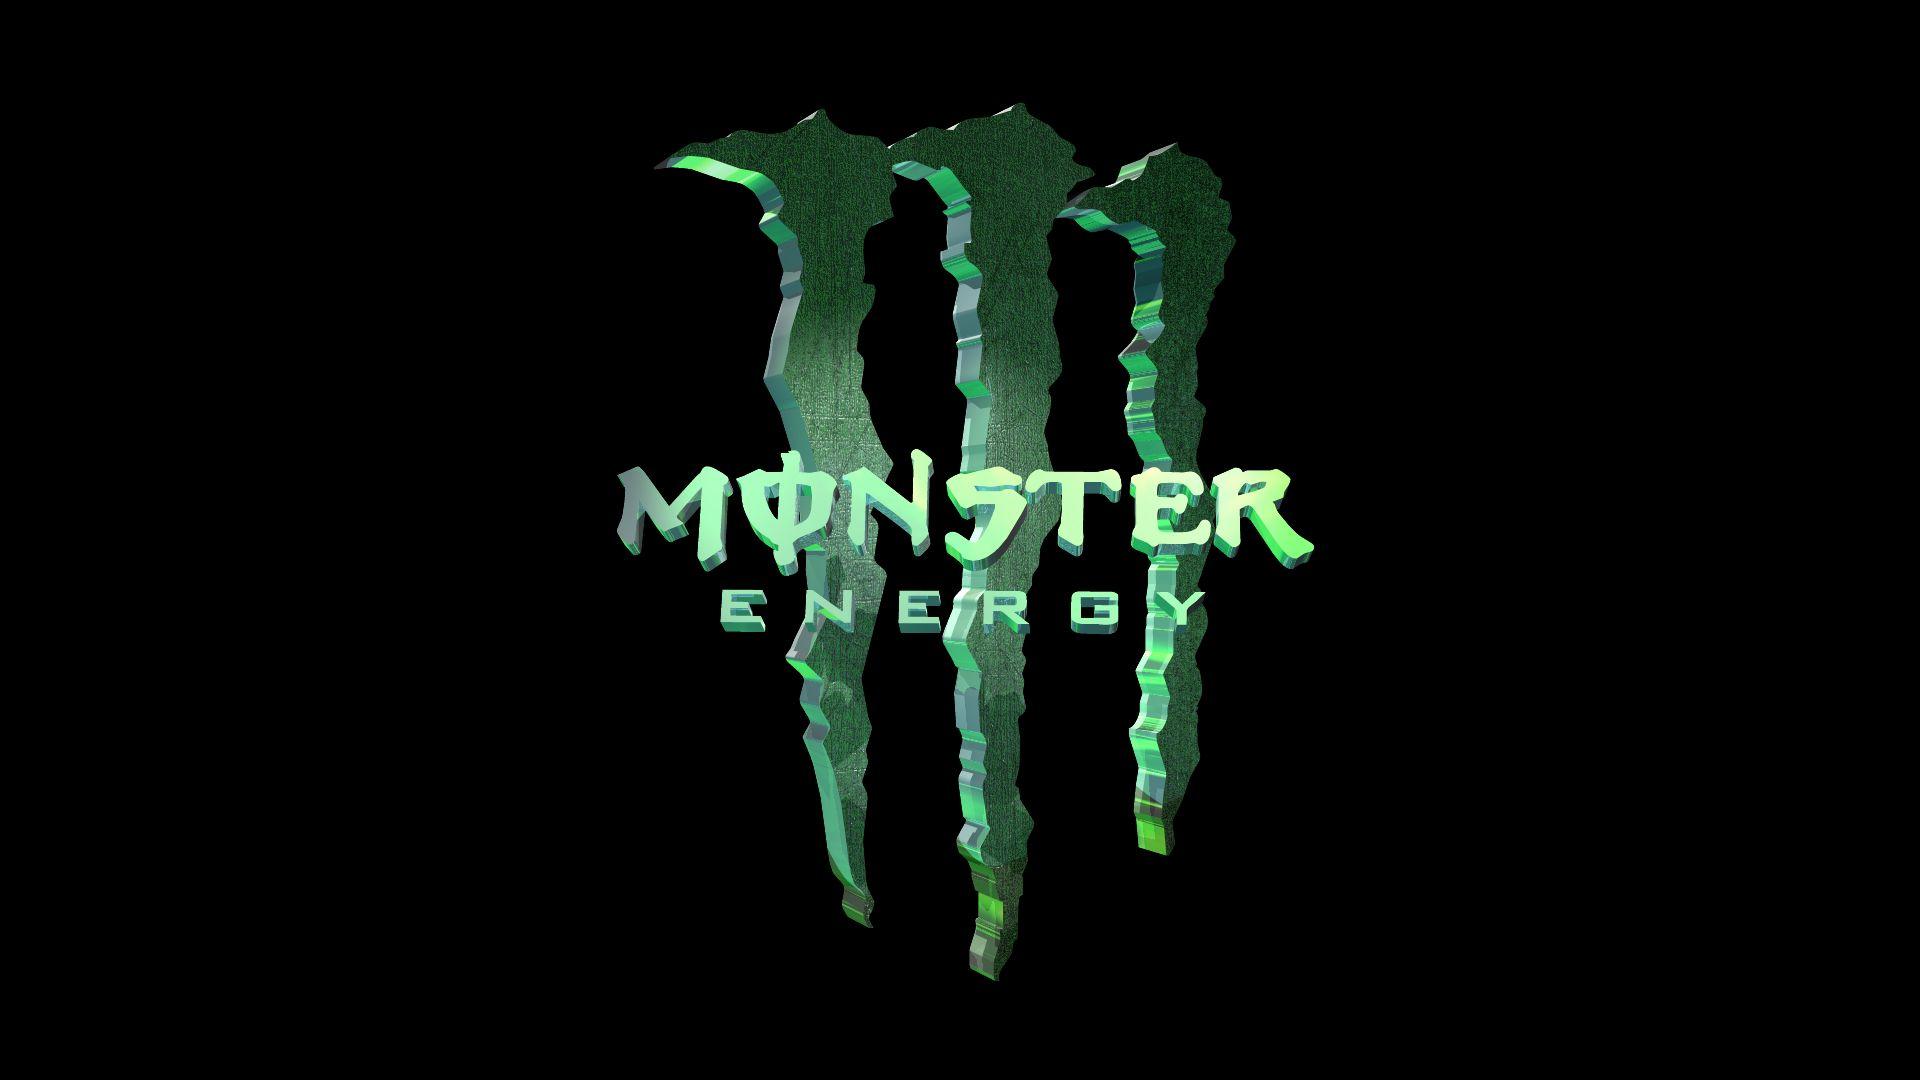 Cool Monster Logo - pics of monster energy logo wallpaper 7 cool. monster embroidery